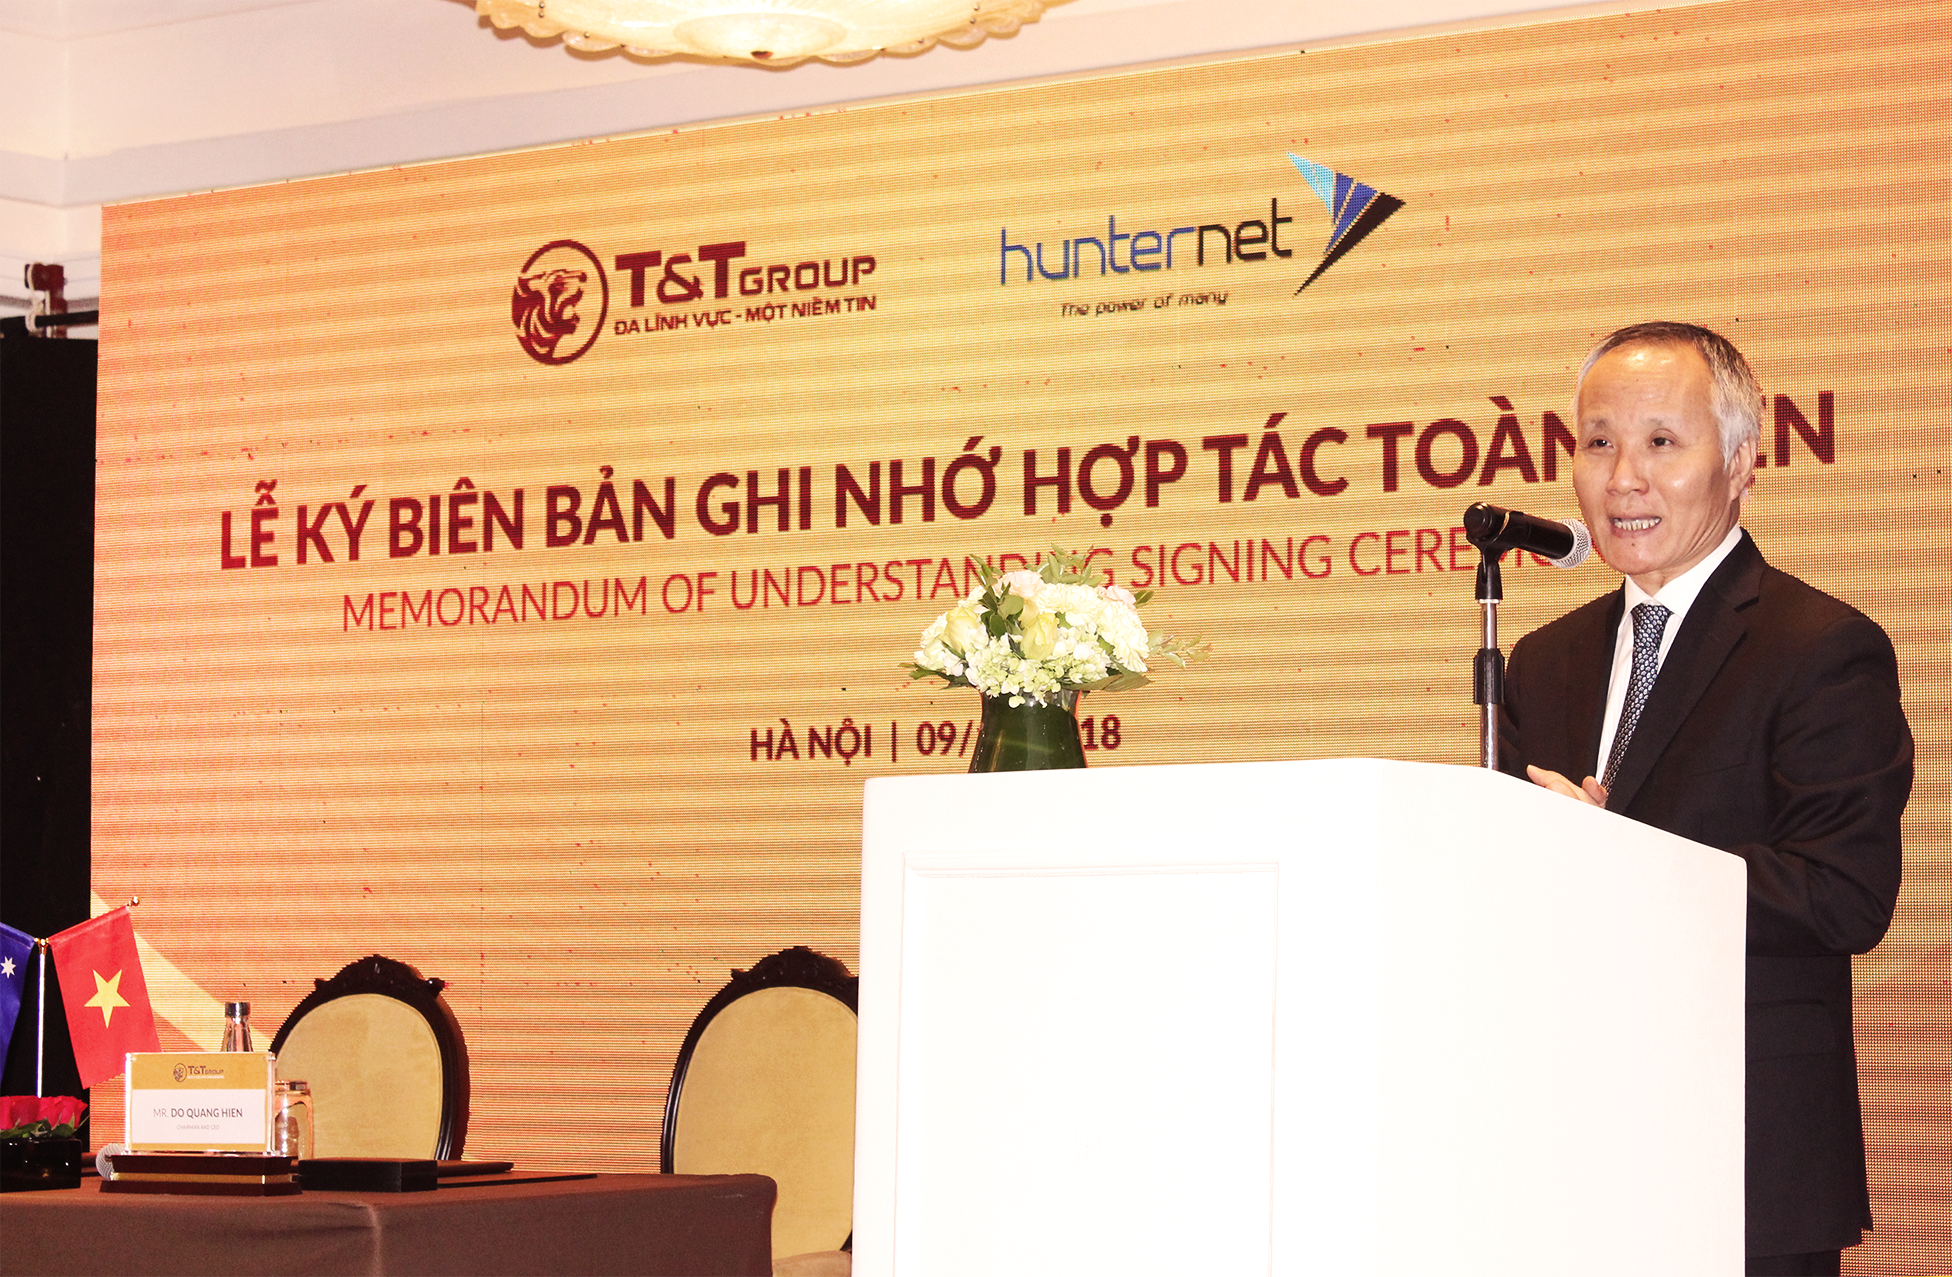 Thứ trưởng Bộ Công thương Trần Quốc Khánh phát biểu tại Lễ ký kết Biên bản ghi nhớ hợp tác toàn diện giữa Tập đoàn T&T Group và Hiệp hội Doanh nghiệp HunterNet